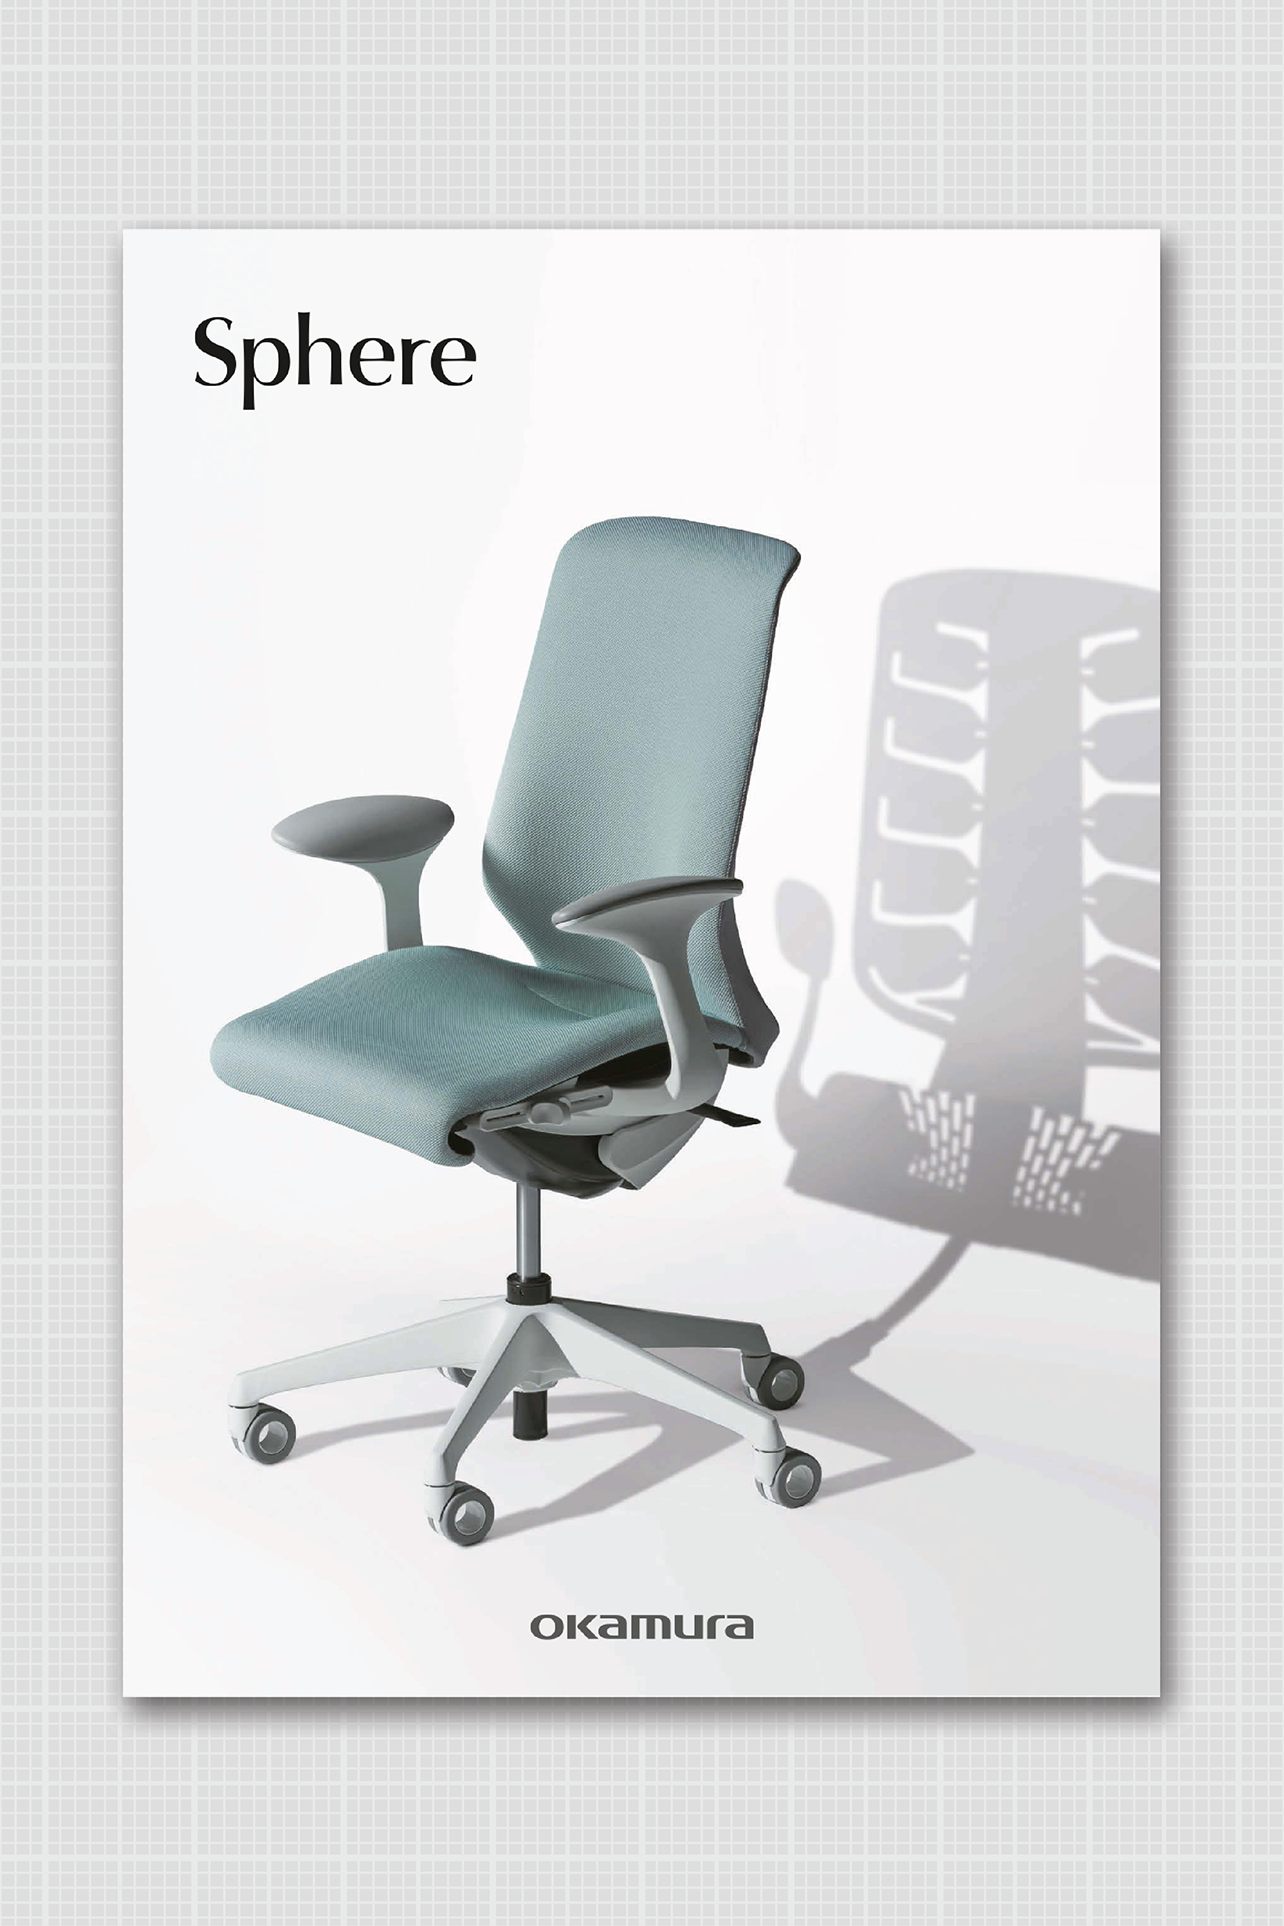 Sphere Brochure